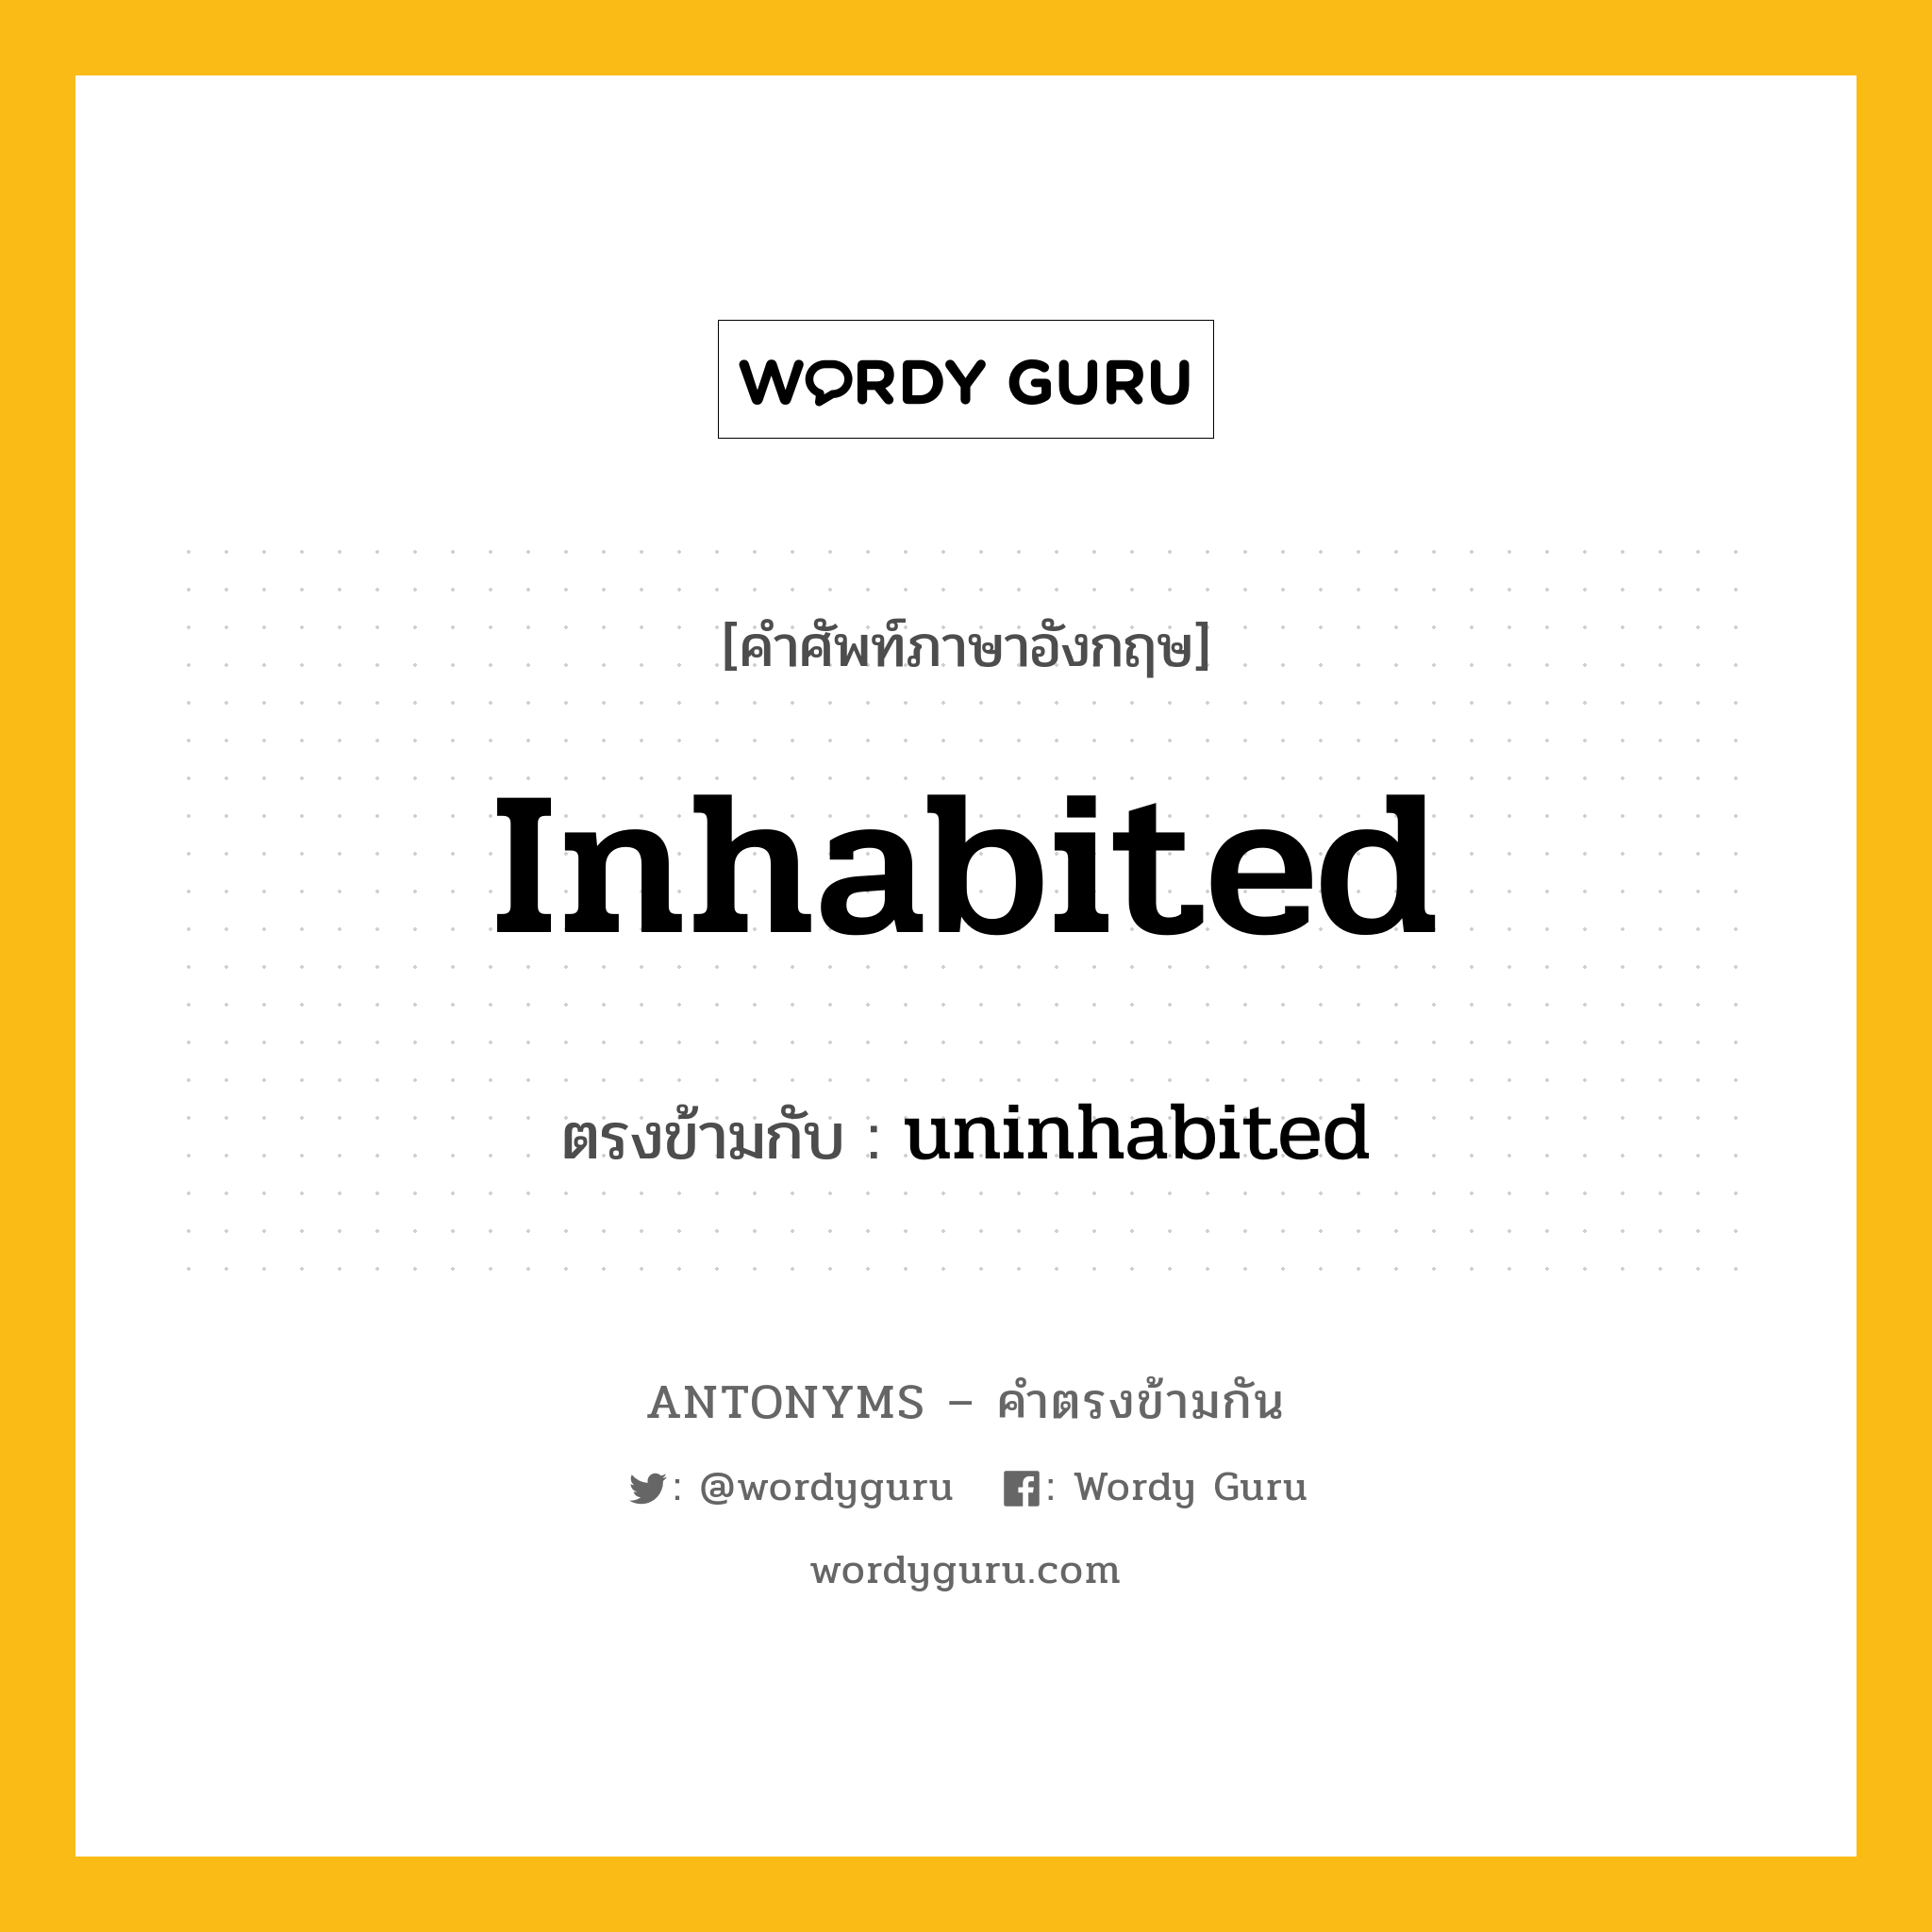 inhabited เป็นคำตรงข้ามกับคำไหนบ้าง?, คำศัพท์ภาษาอังกฤษ inhabited ตรงข้ามกับ uninhabited หมวด uninhabited